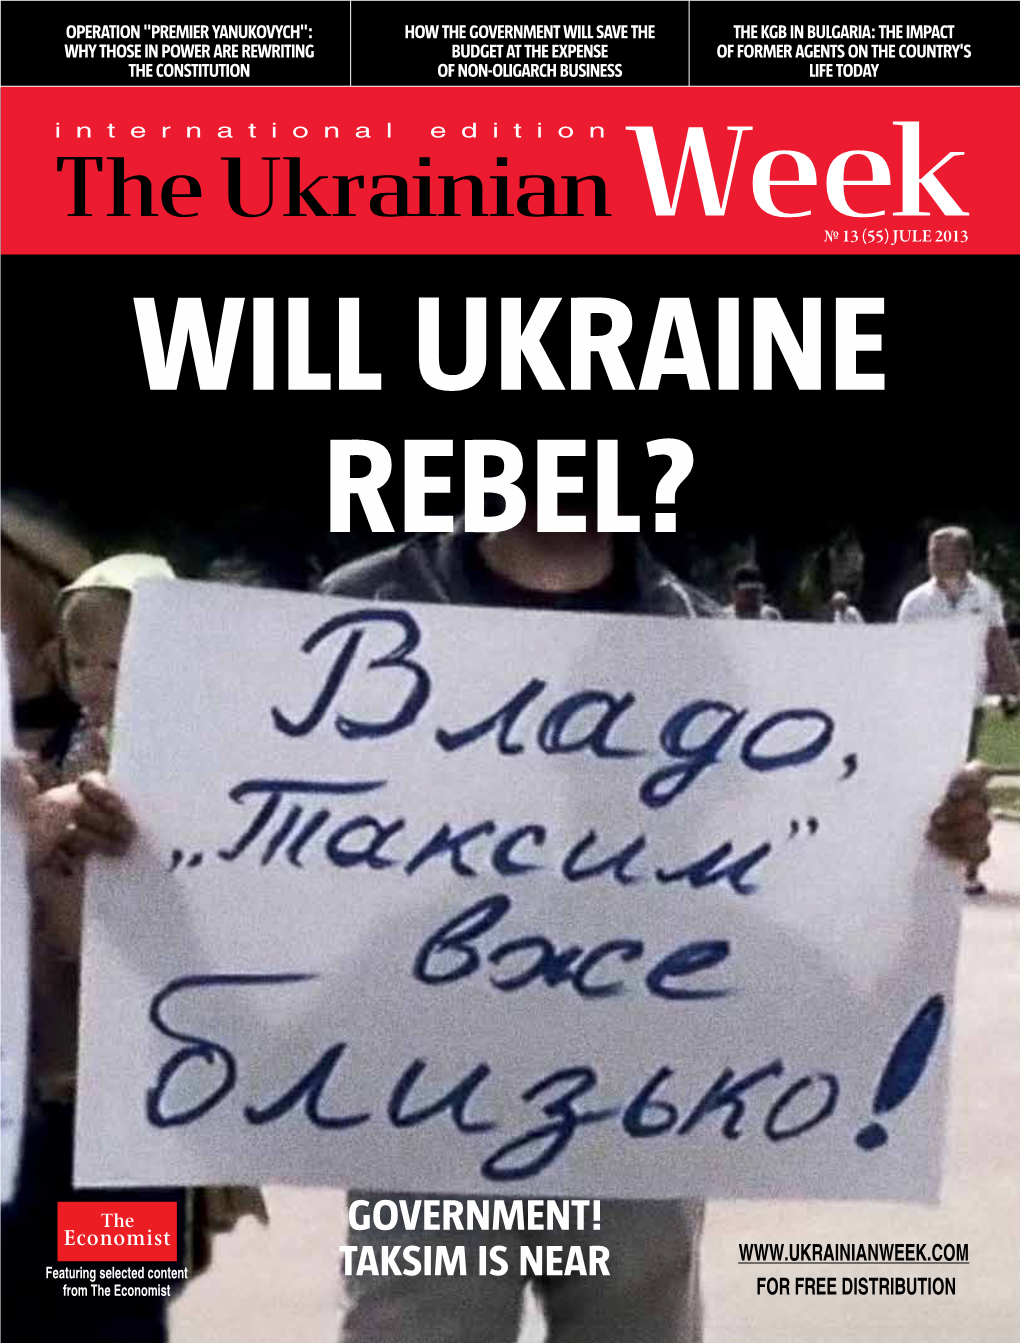 The Ukrainian Week № 13 (55) July 2013